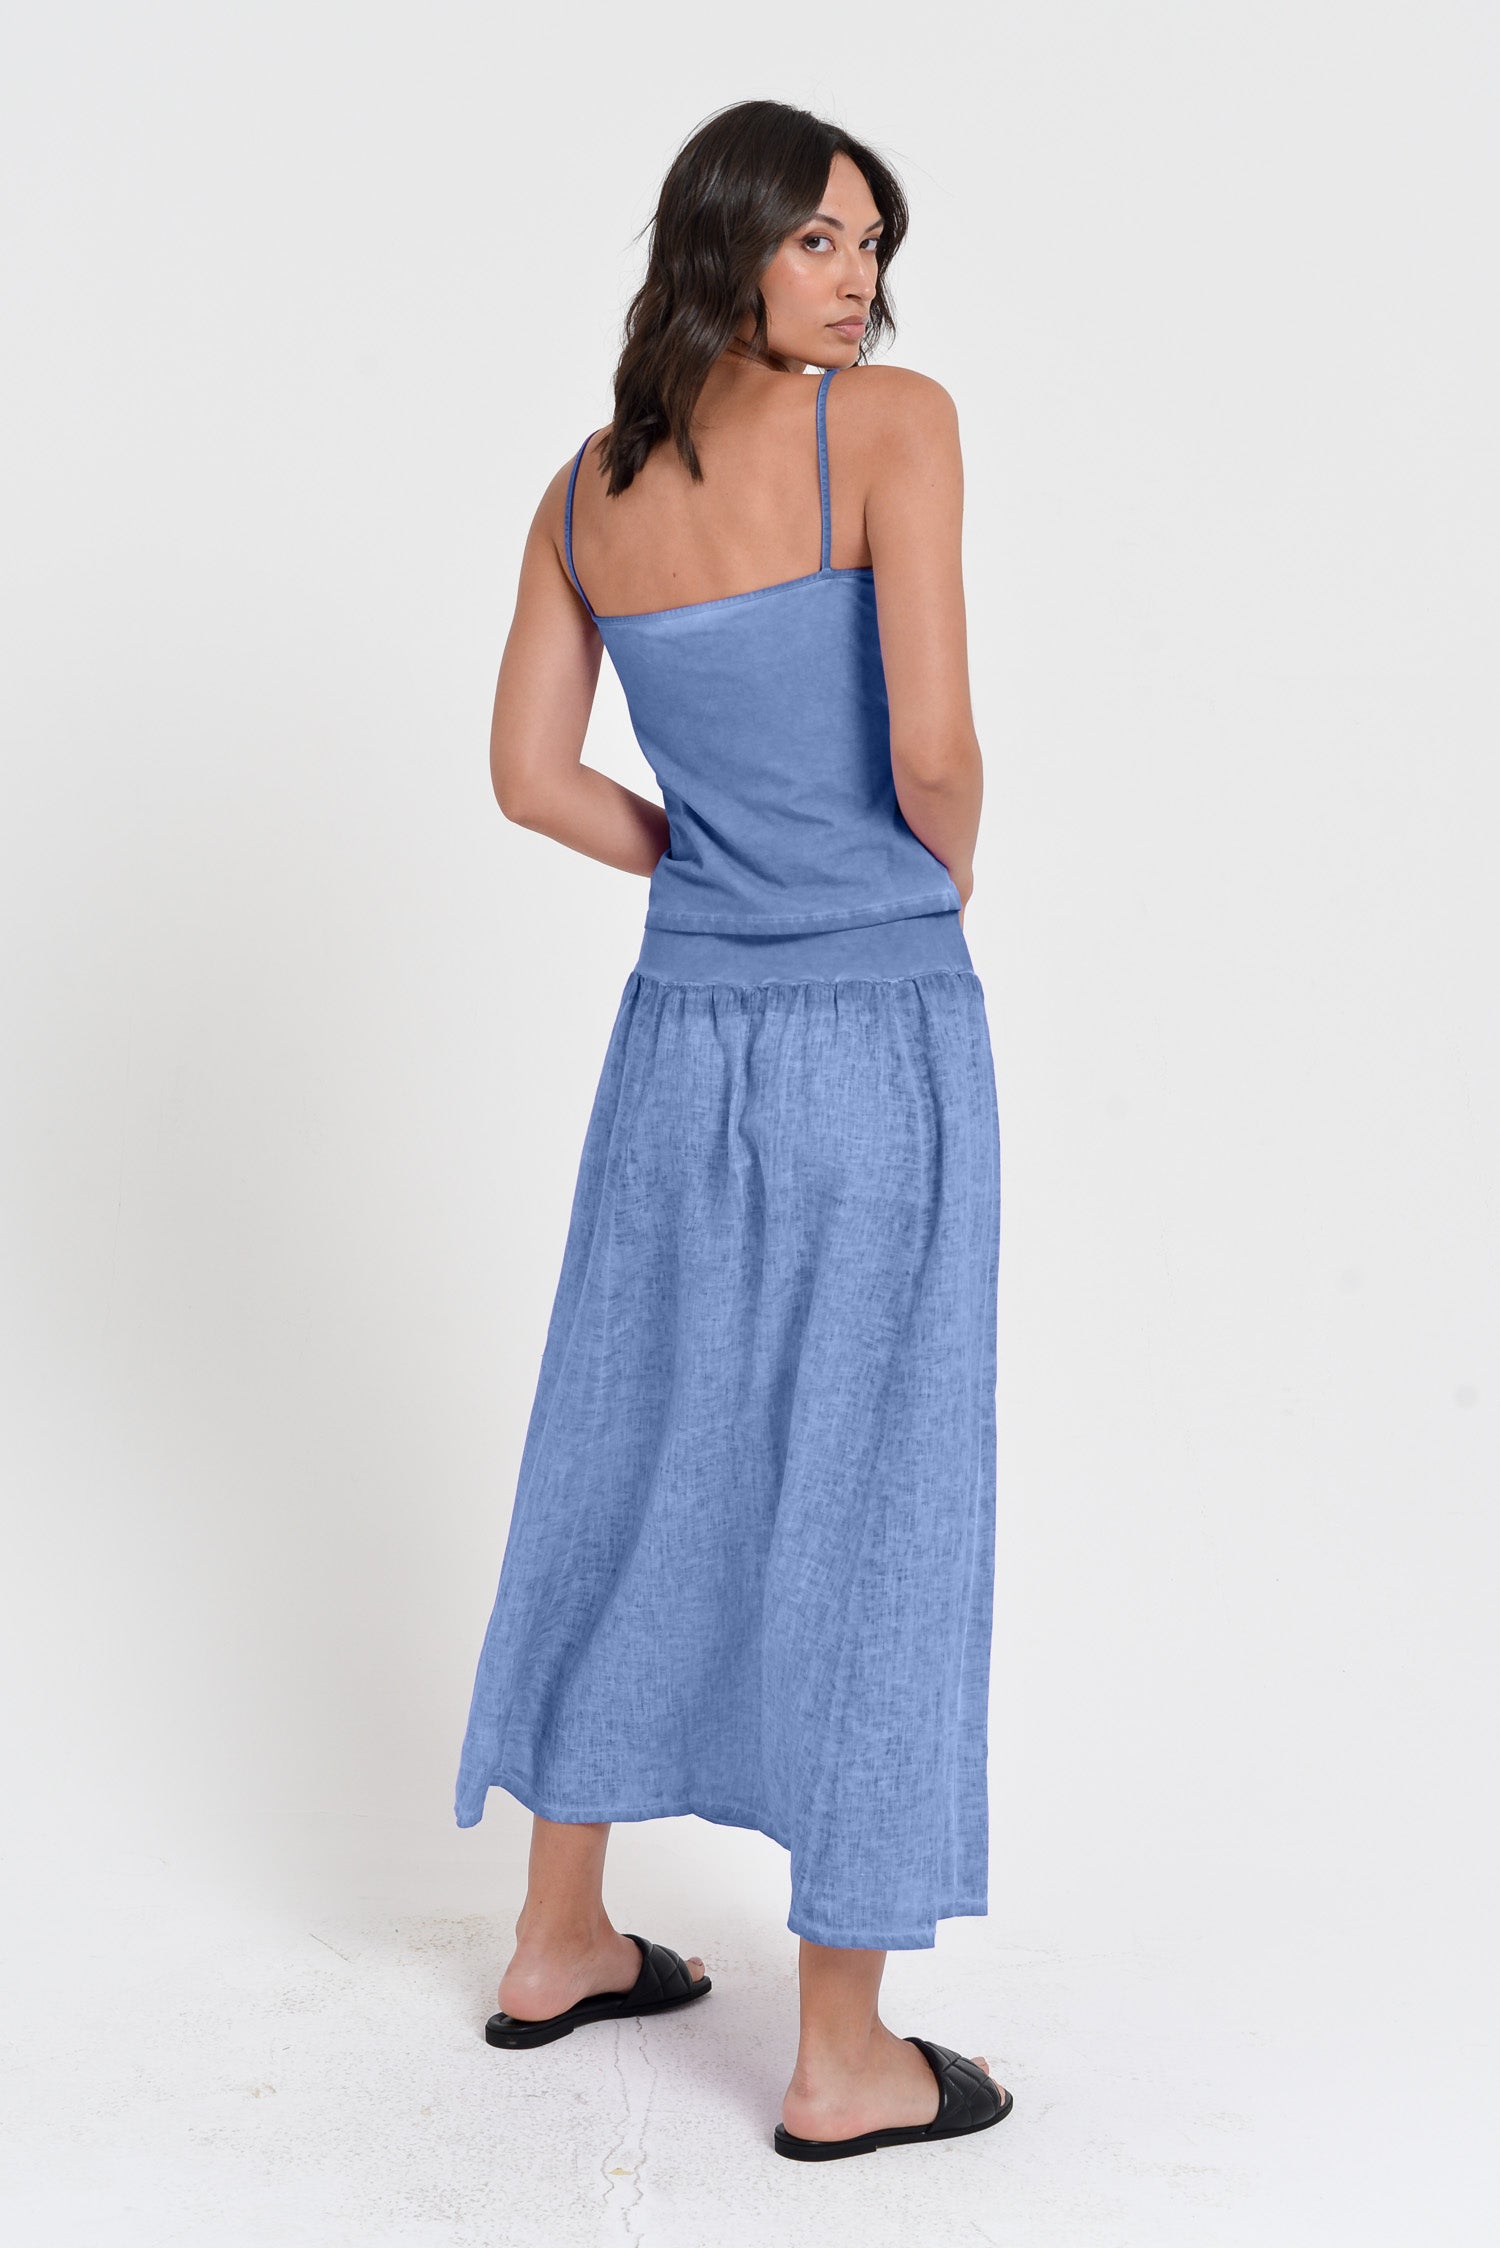 Maxime Skirt - Women's Breezy Linen Skirt - Bay